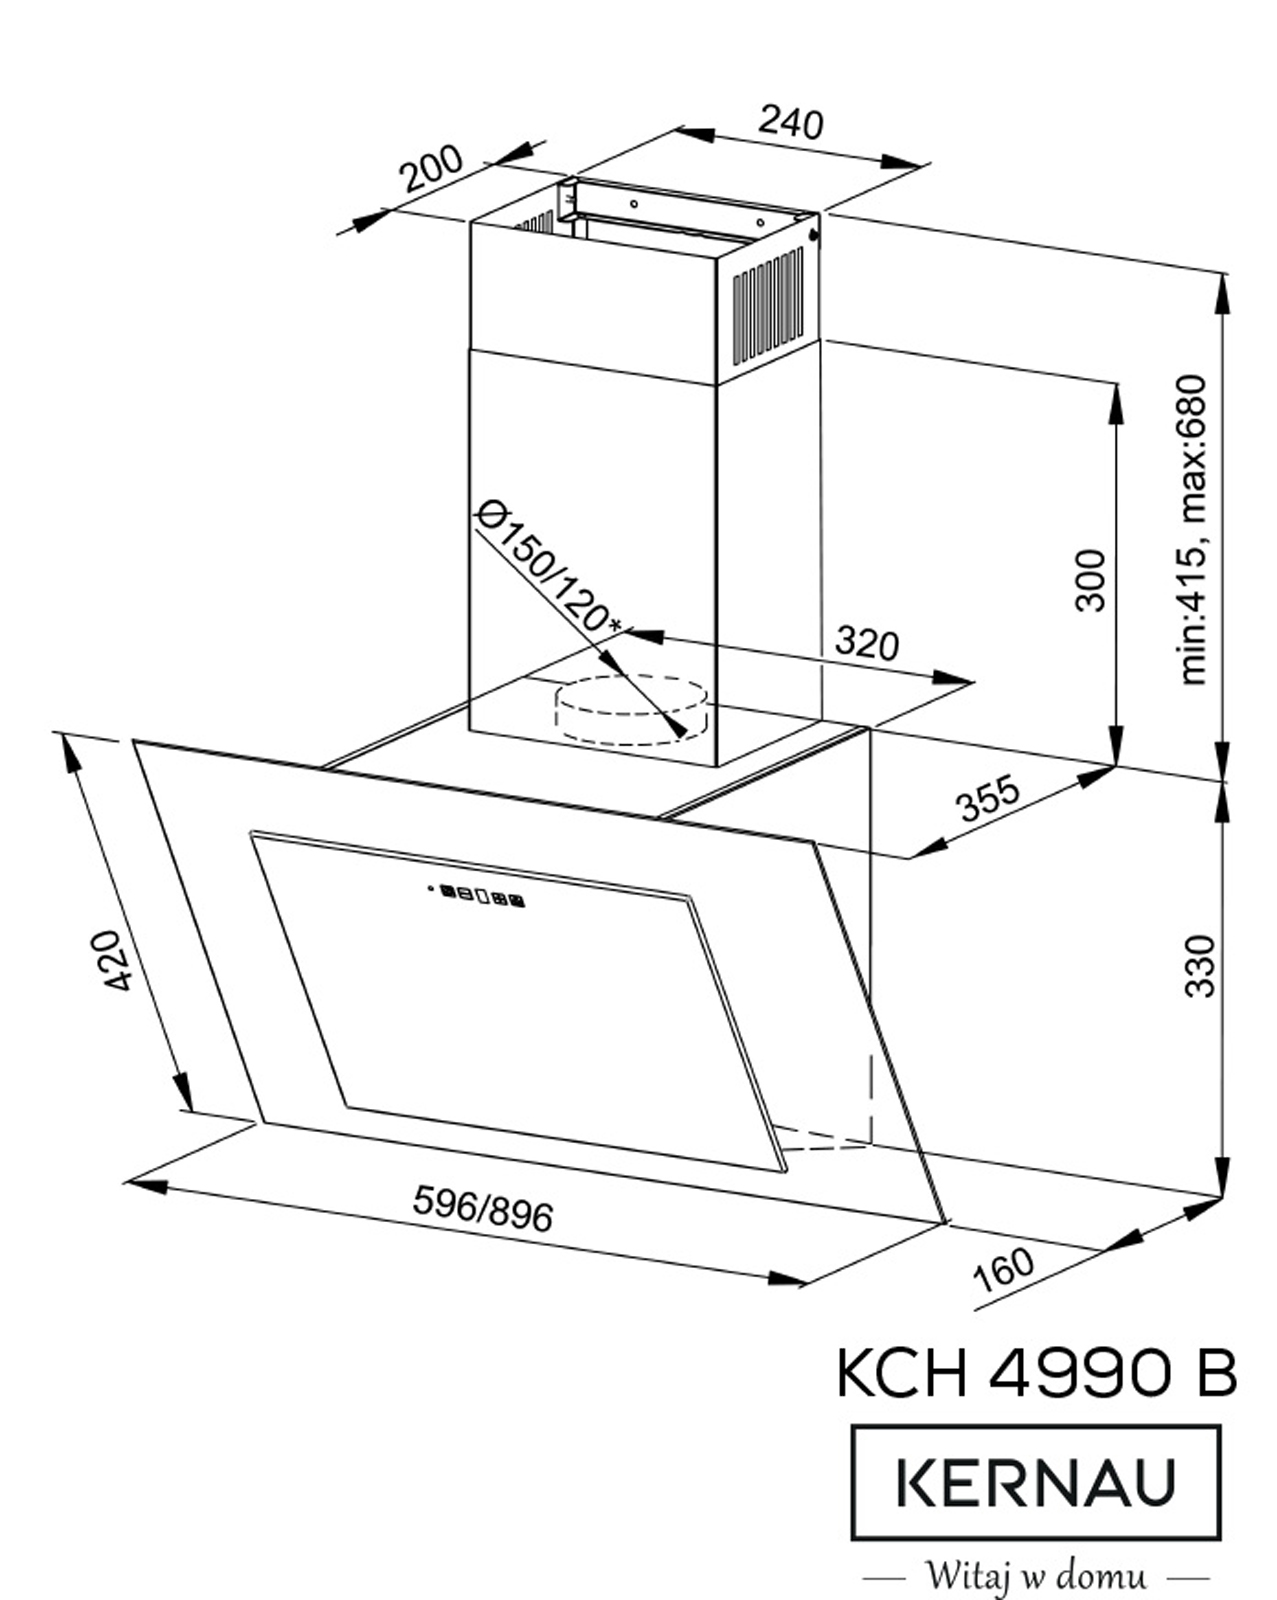 KCH 4990 B